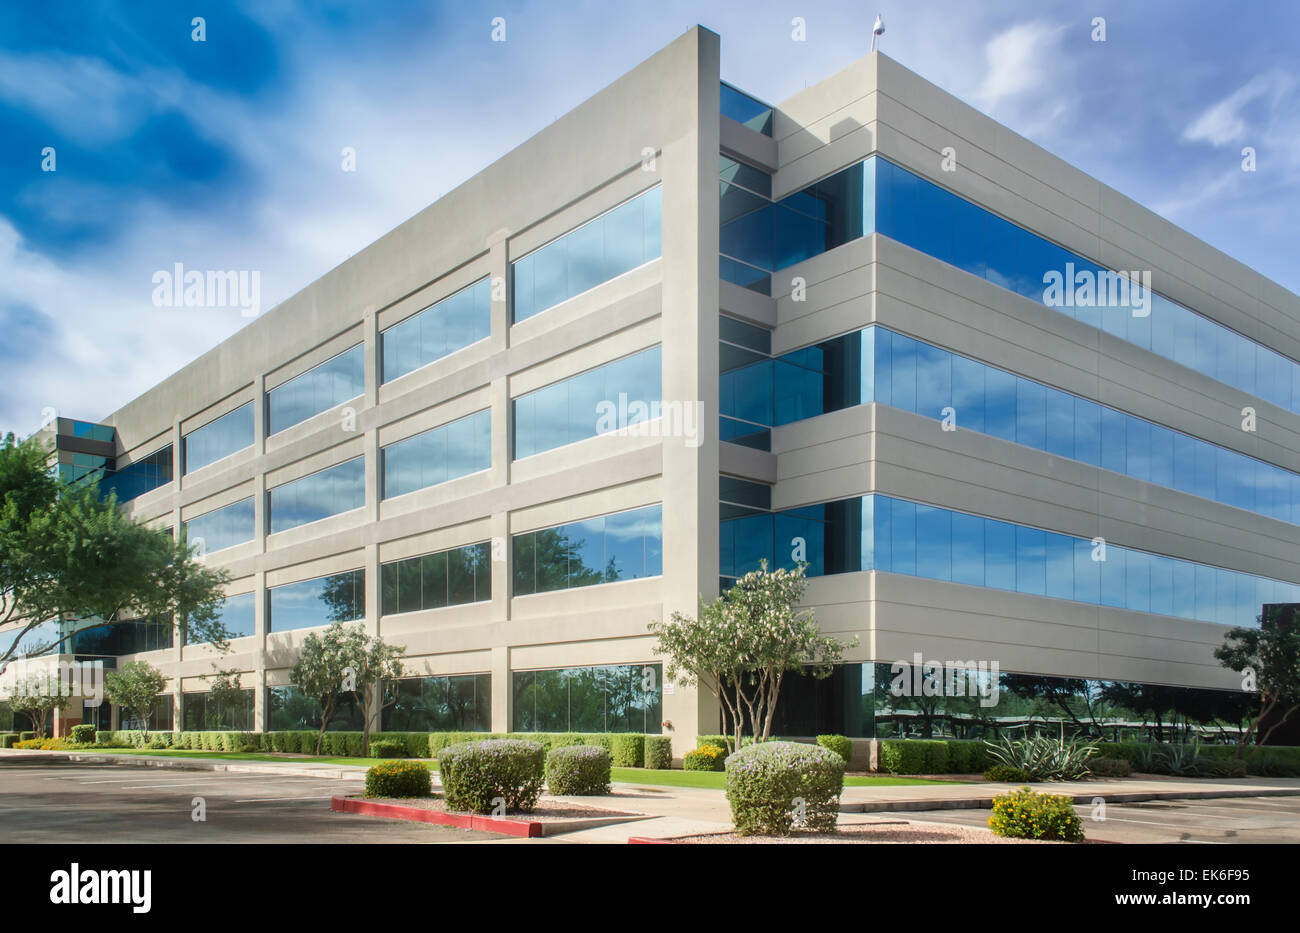 Stilisierte veränderten allgemeinen corporate modernes Bürogebäude Stockfoto